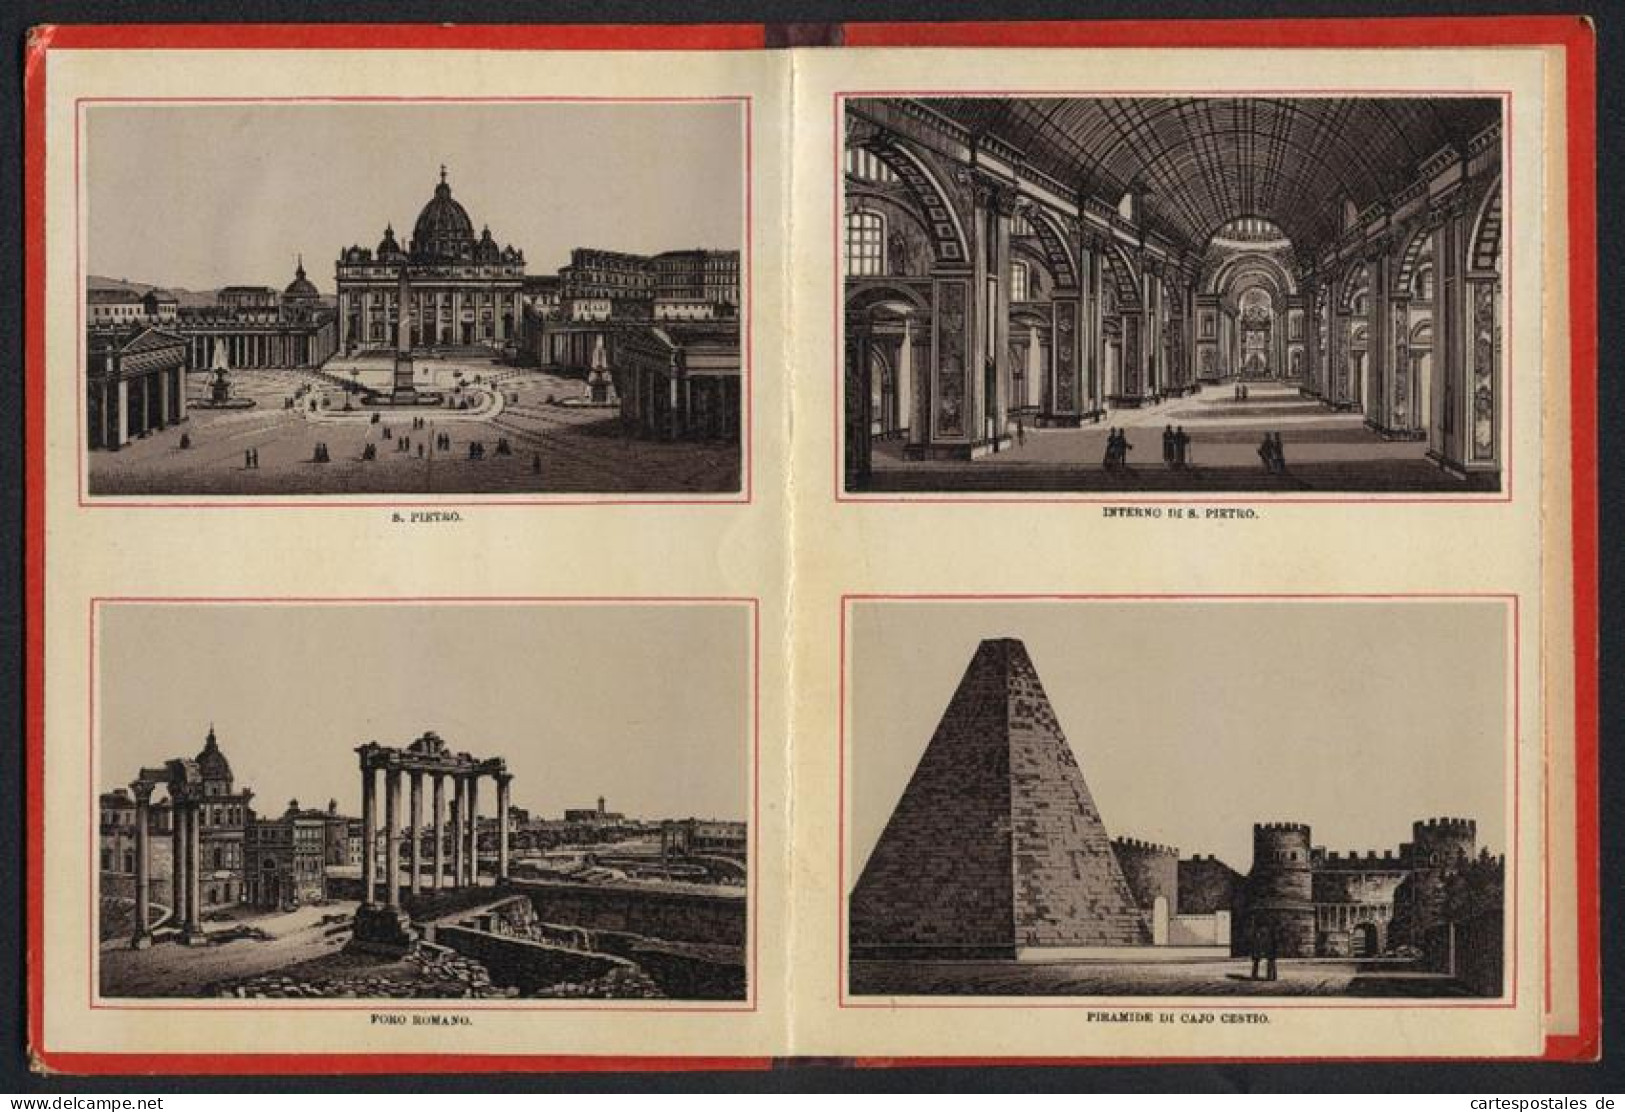 Leporello-Album 24 Lithographie-Ansichten Roma, S. Pietro, Piramide Di Cajo Cestio, Fontana Di Trevi, Piazza Colonna  - Lithographien